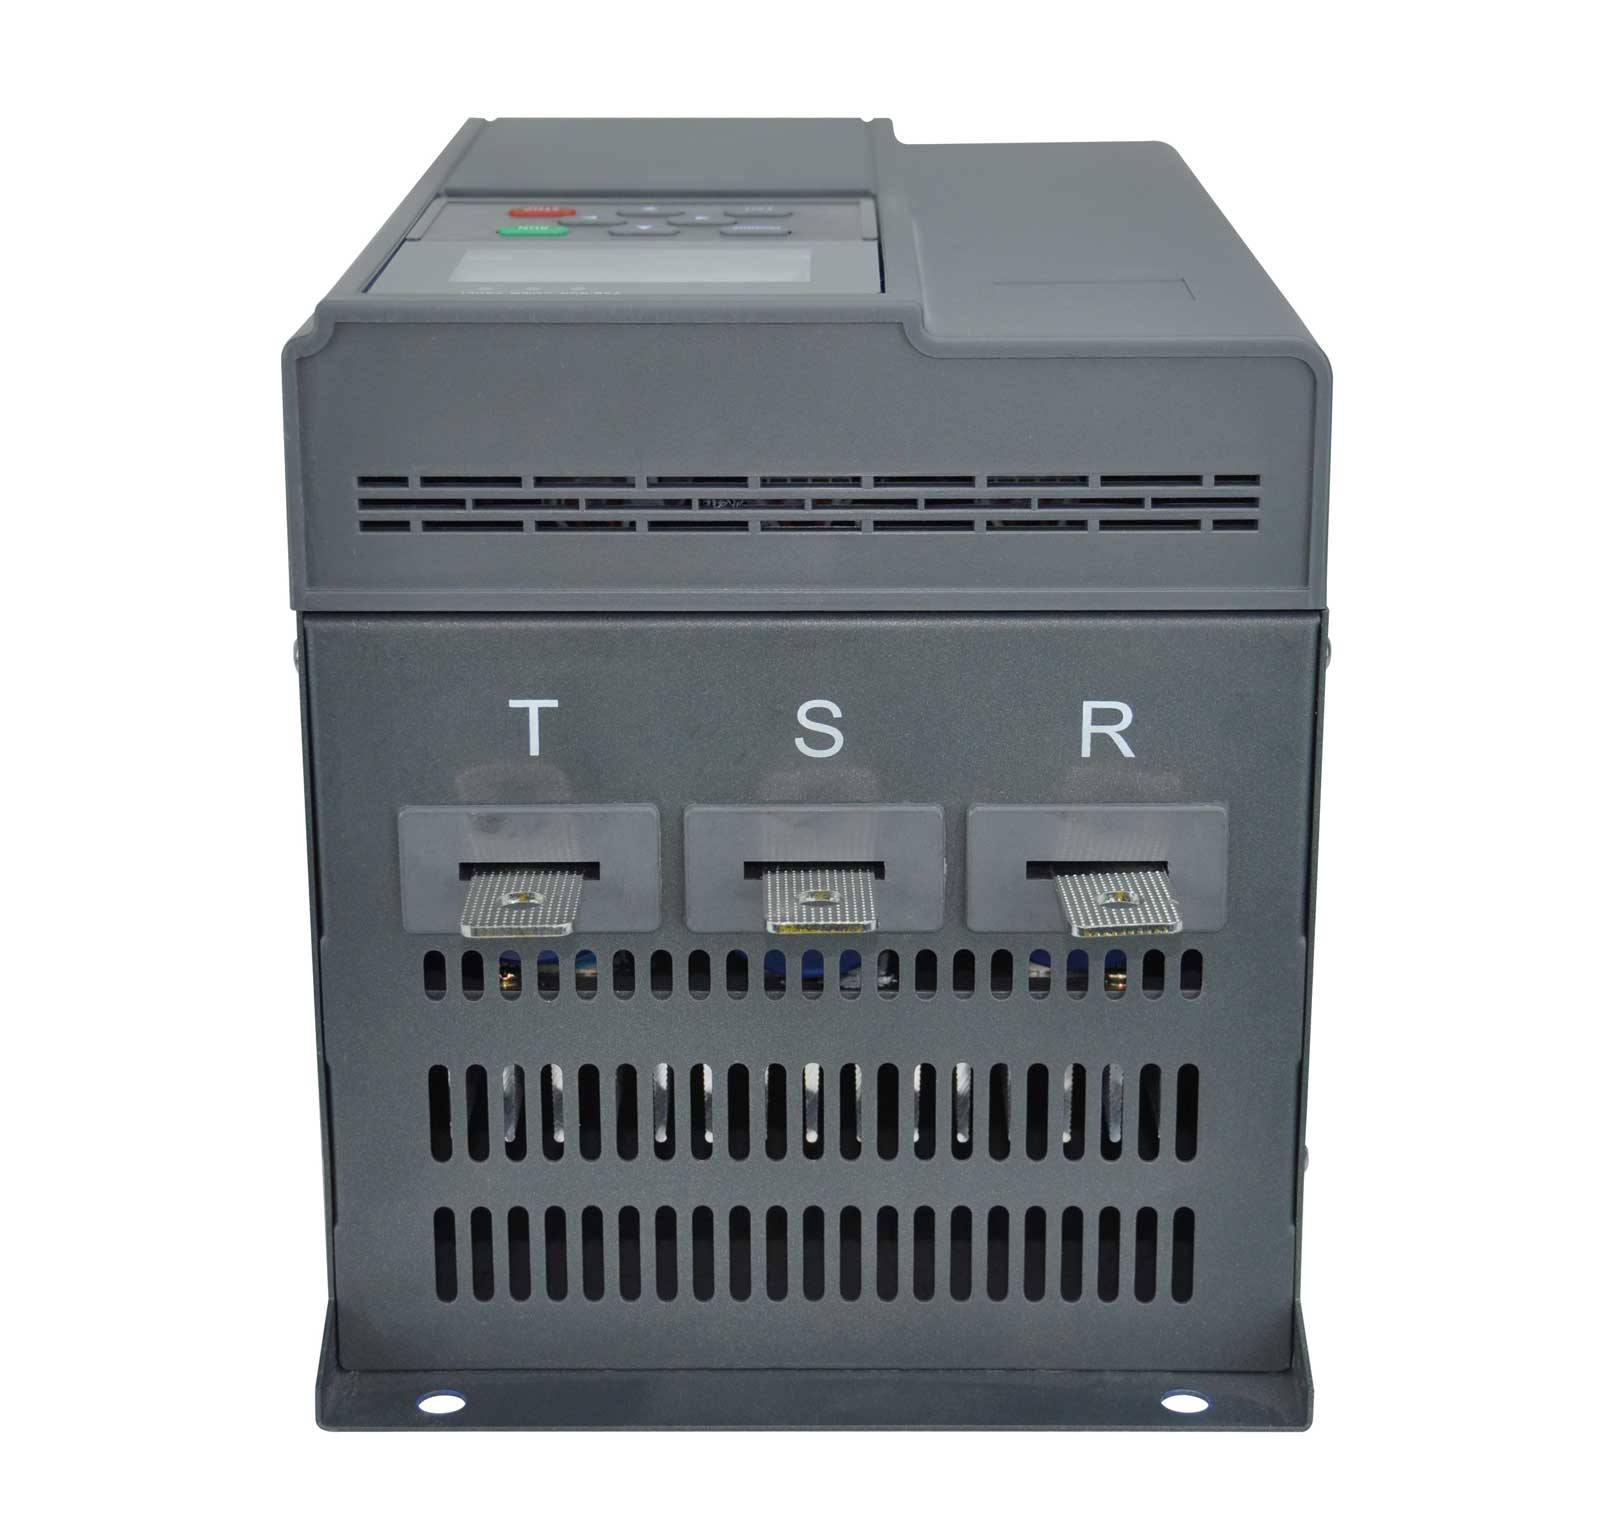 FST-3000 series built-in bypass soft starter